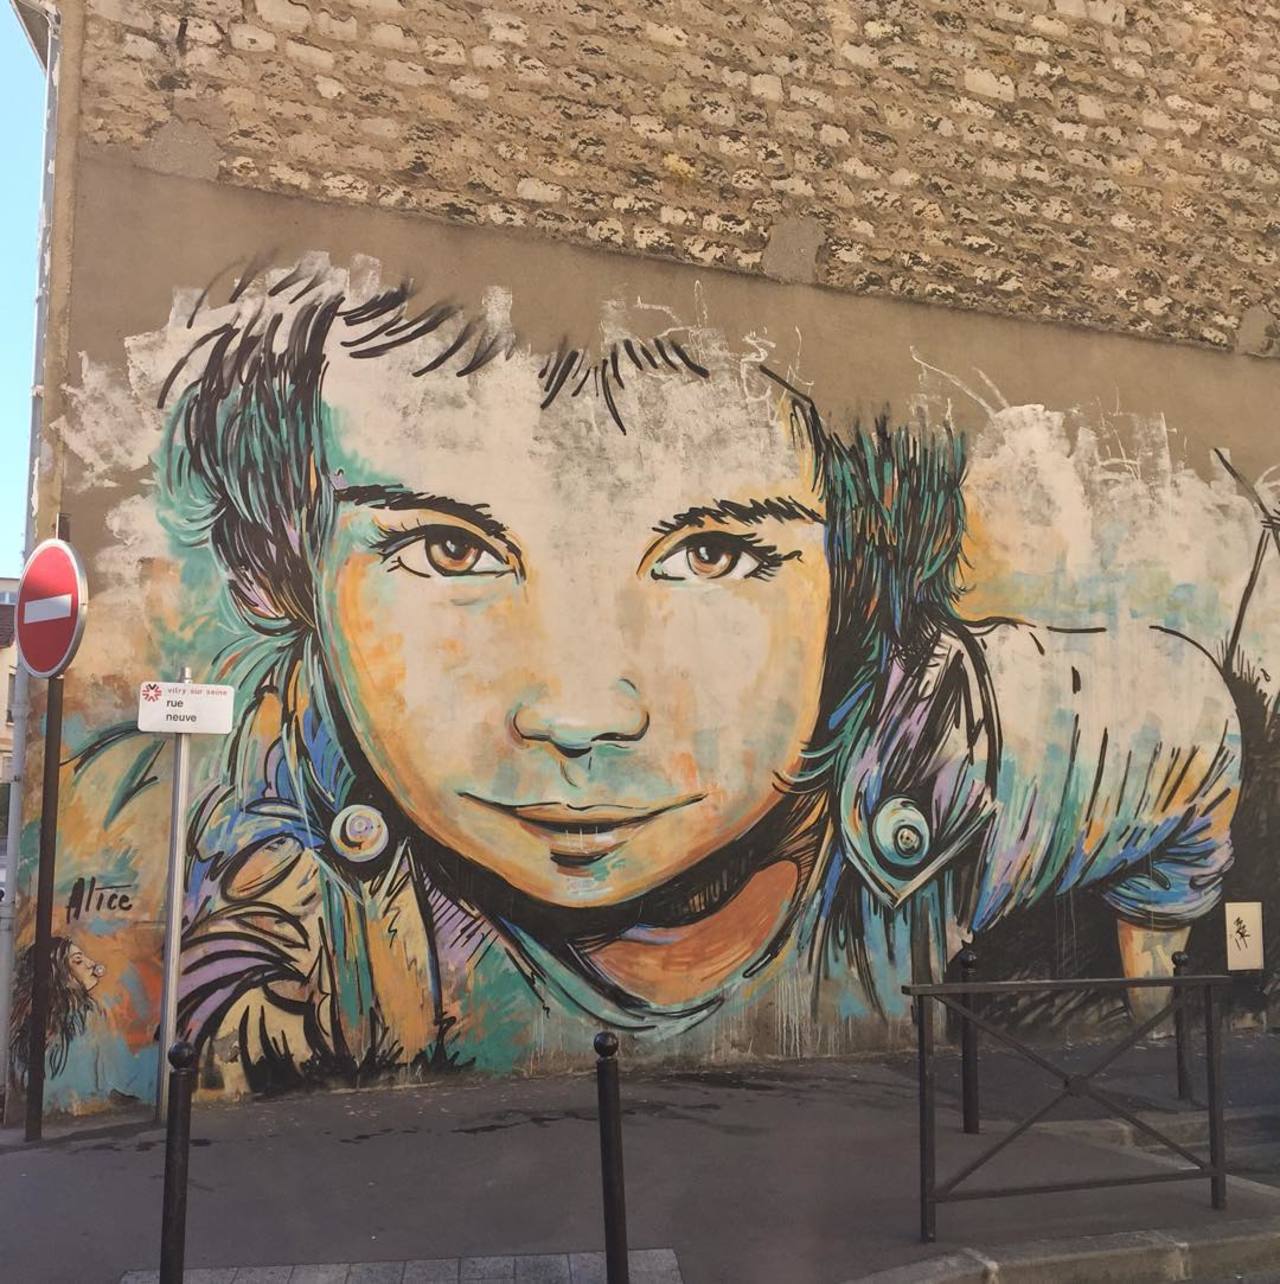 #Paris #graffiti photo by @jeanlucr http://ift.tt/1JKrexQ #StreetArt http://t.co/XFT5foeciu